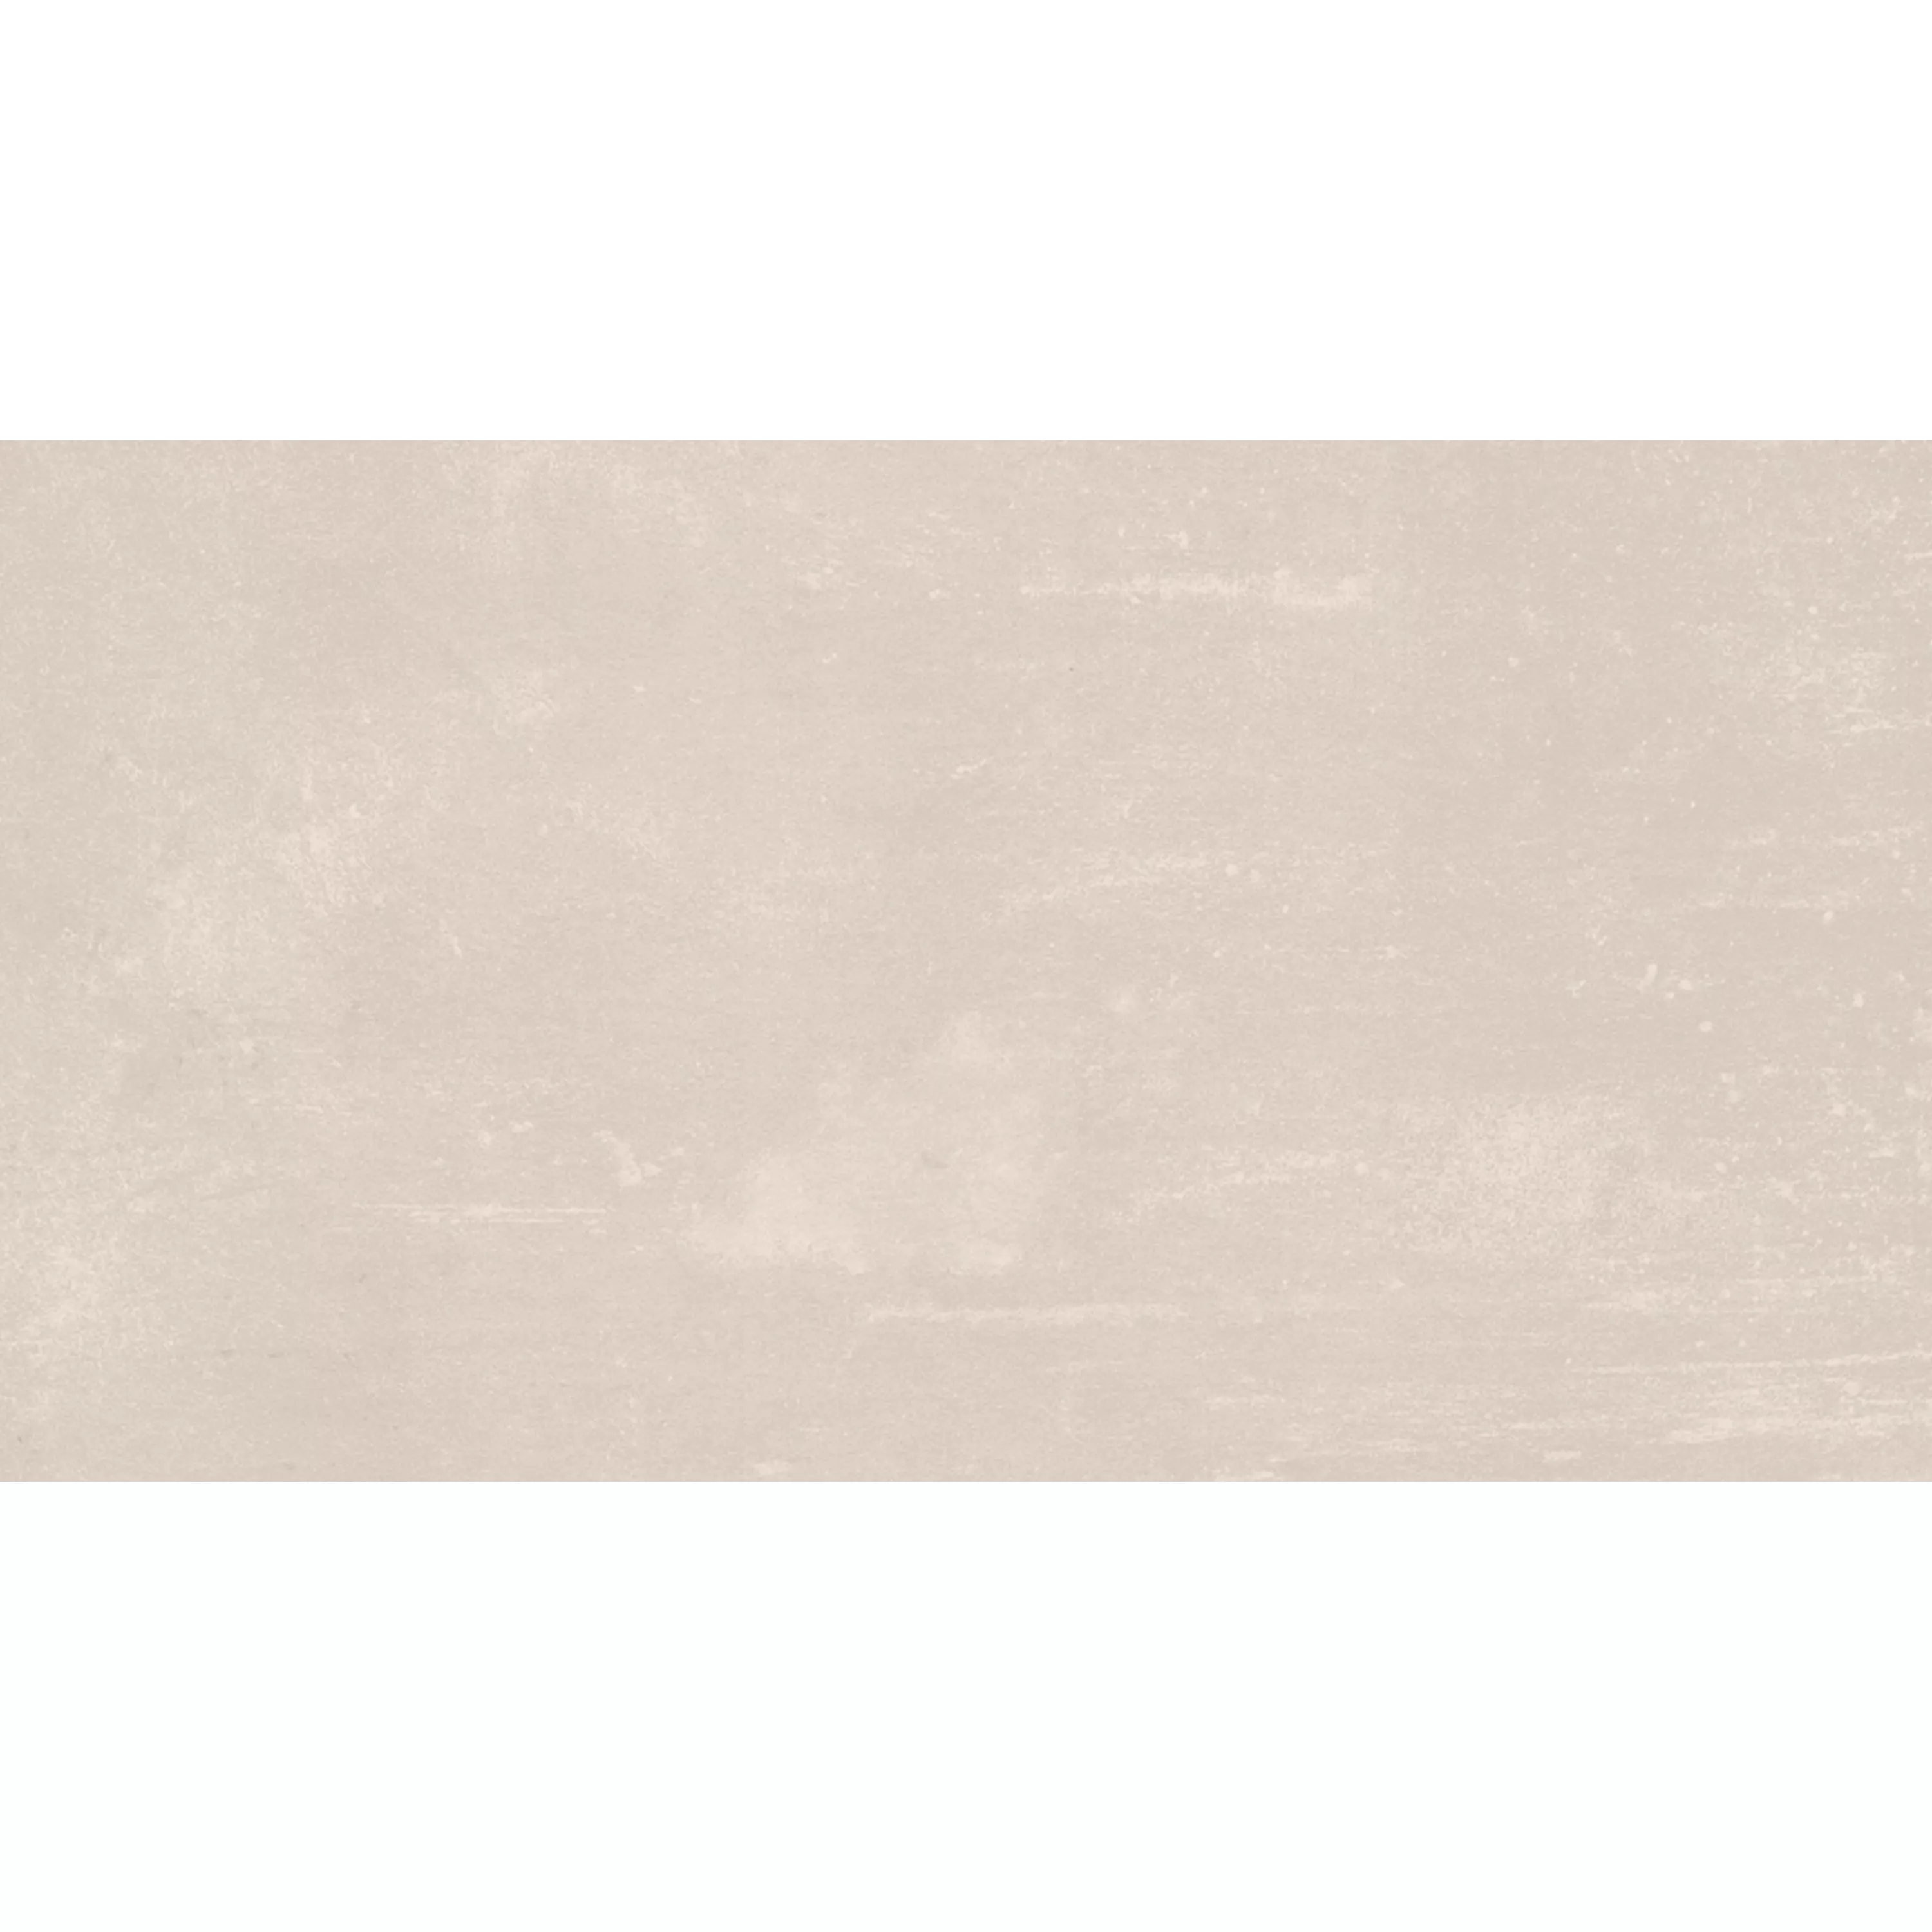 Πλακάκι Δαπέδου Castlebrook Πέτρινη Όψη Kρέμα 30x60cm